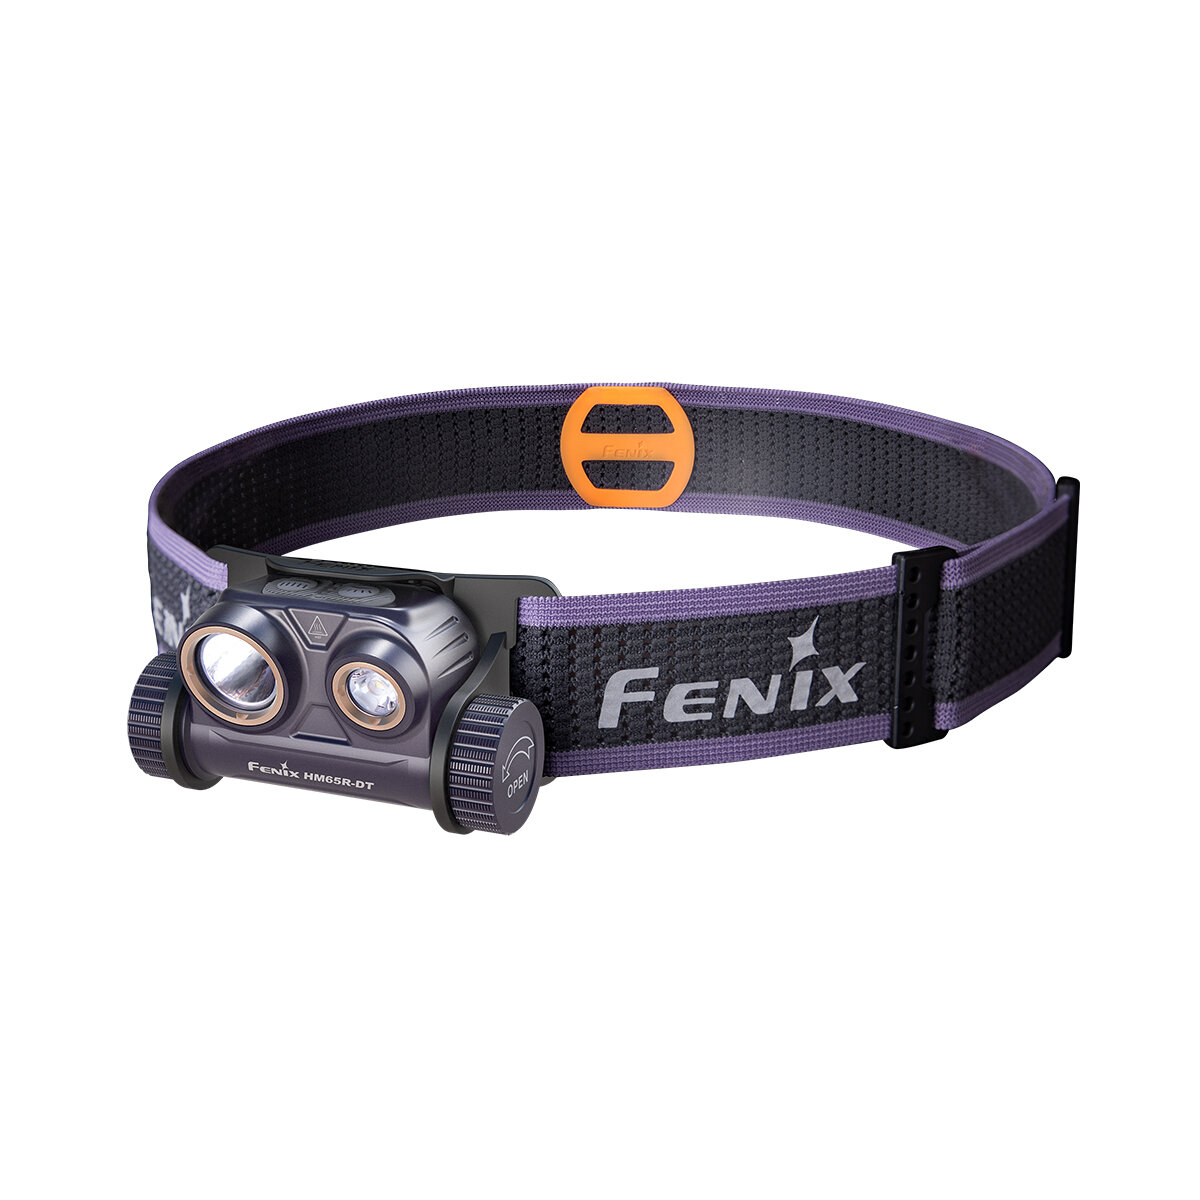 Налобныйфонарь Fenix HM65R-DT Dual LED 1500 Lm Dark Purple